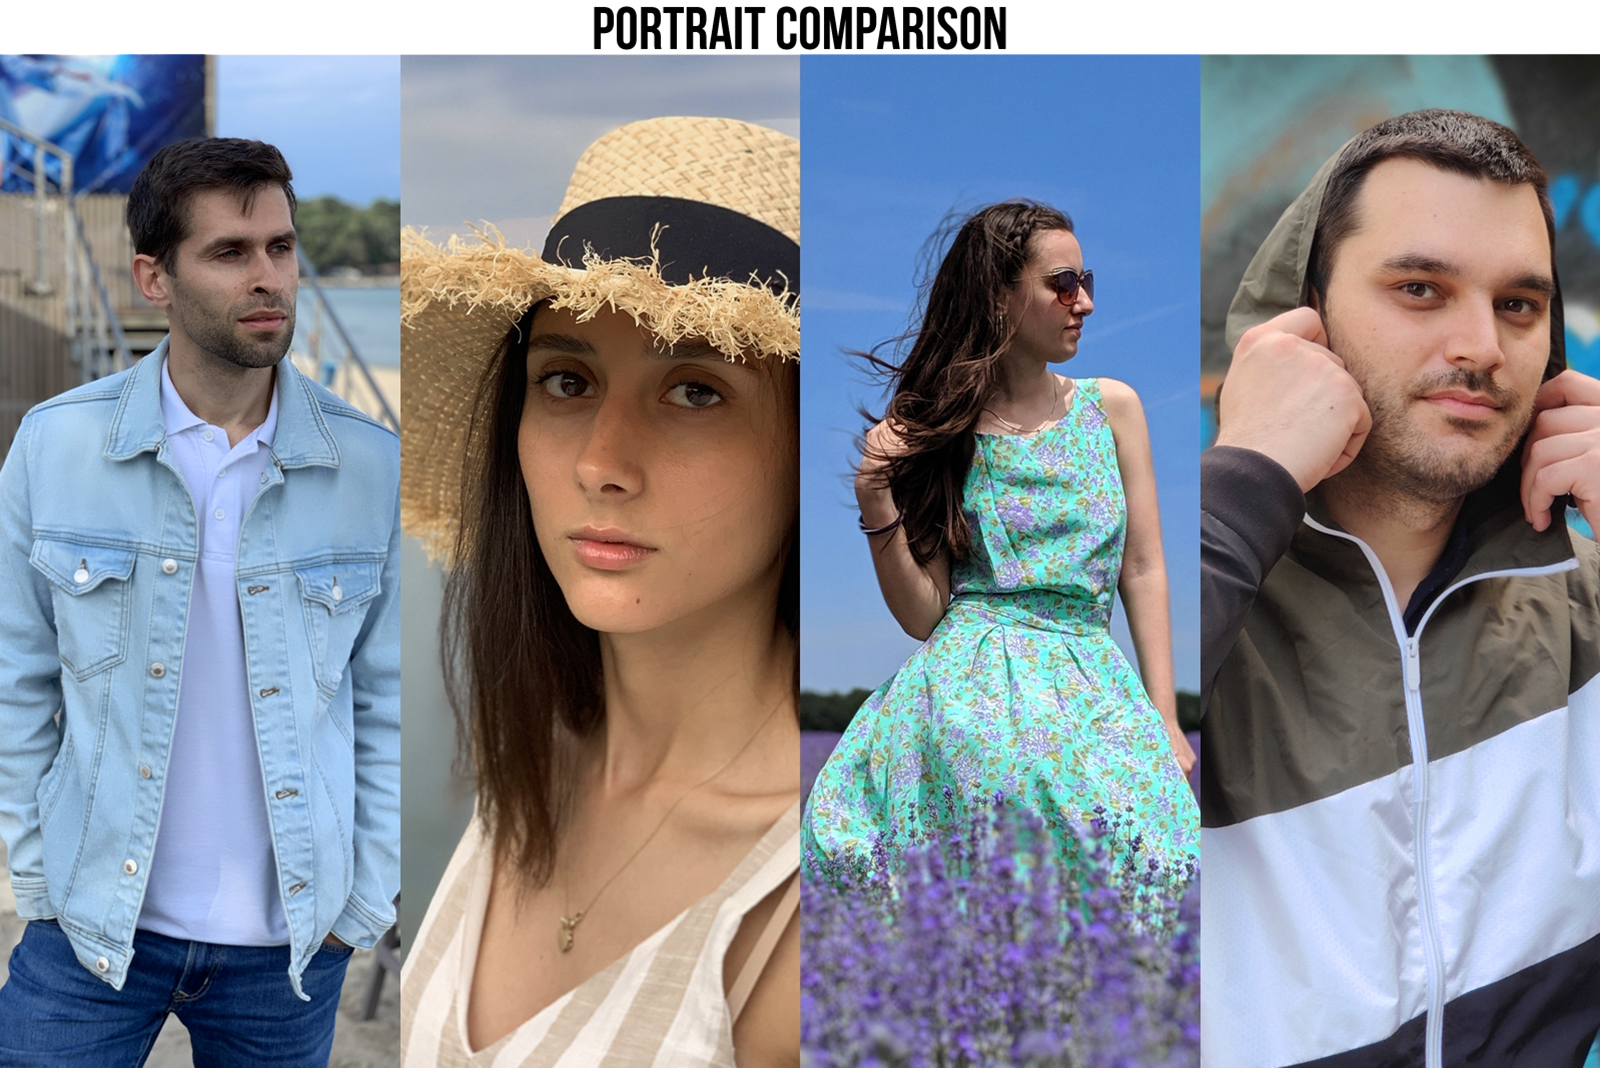 Comparação de retratos: OnePlus 7 Pro vs iPhone XS Max e Google Pixel 3 vs Galaxy S10 +